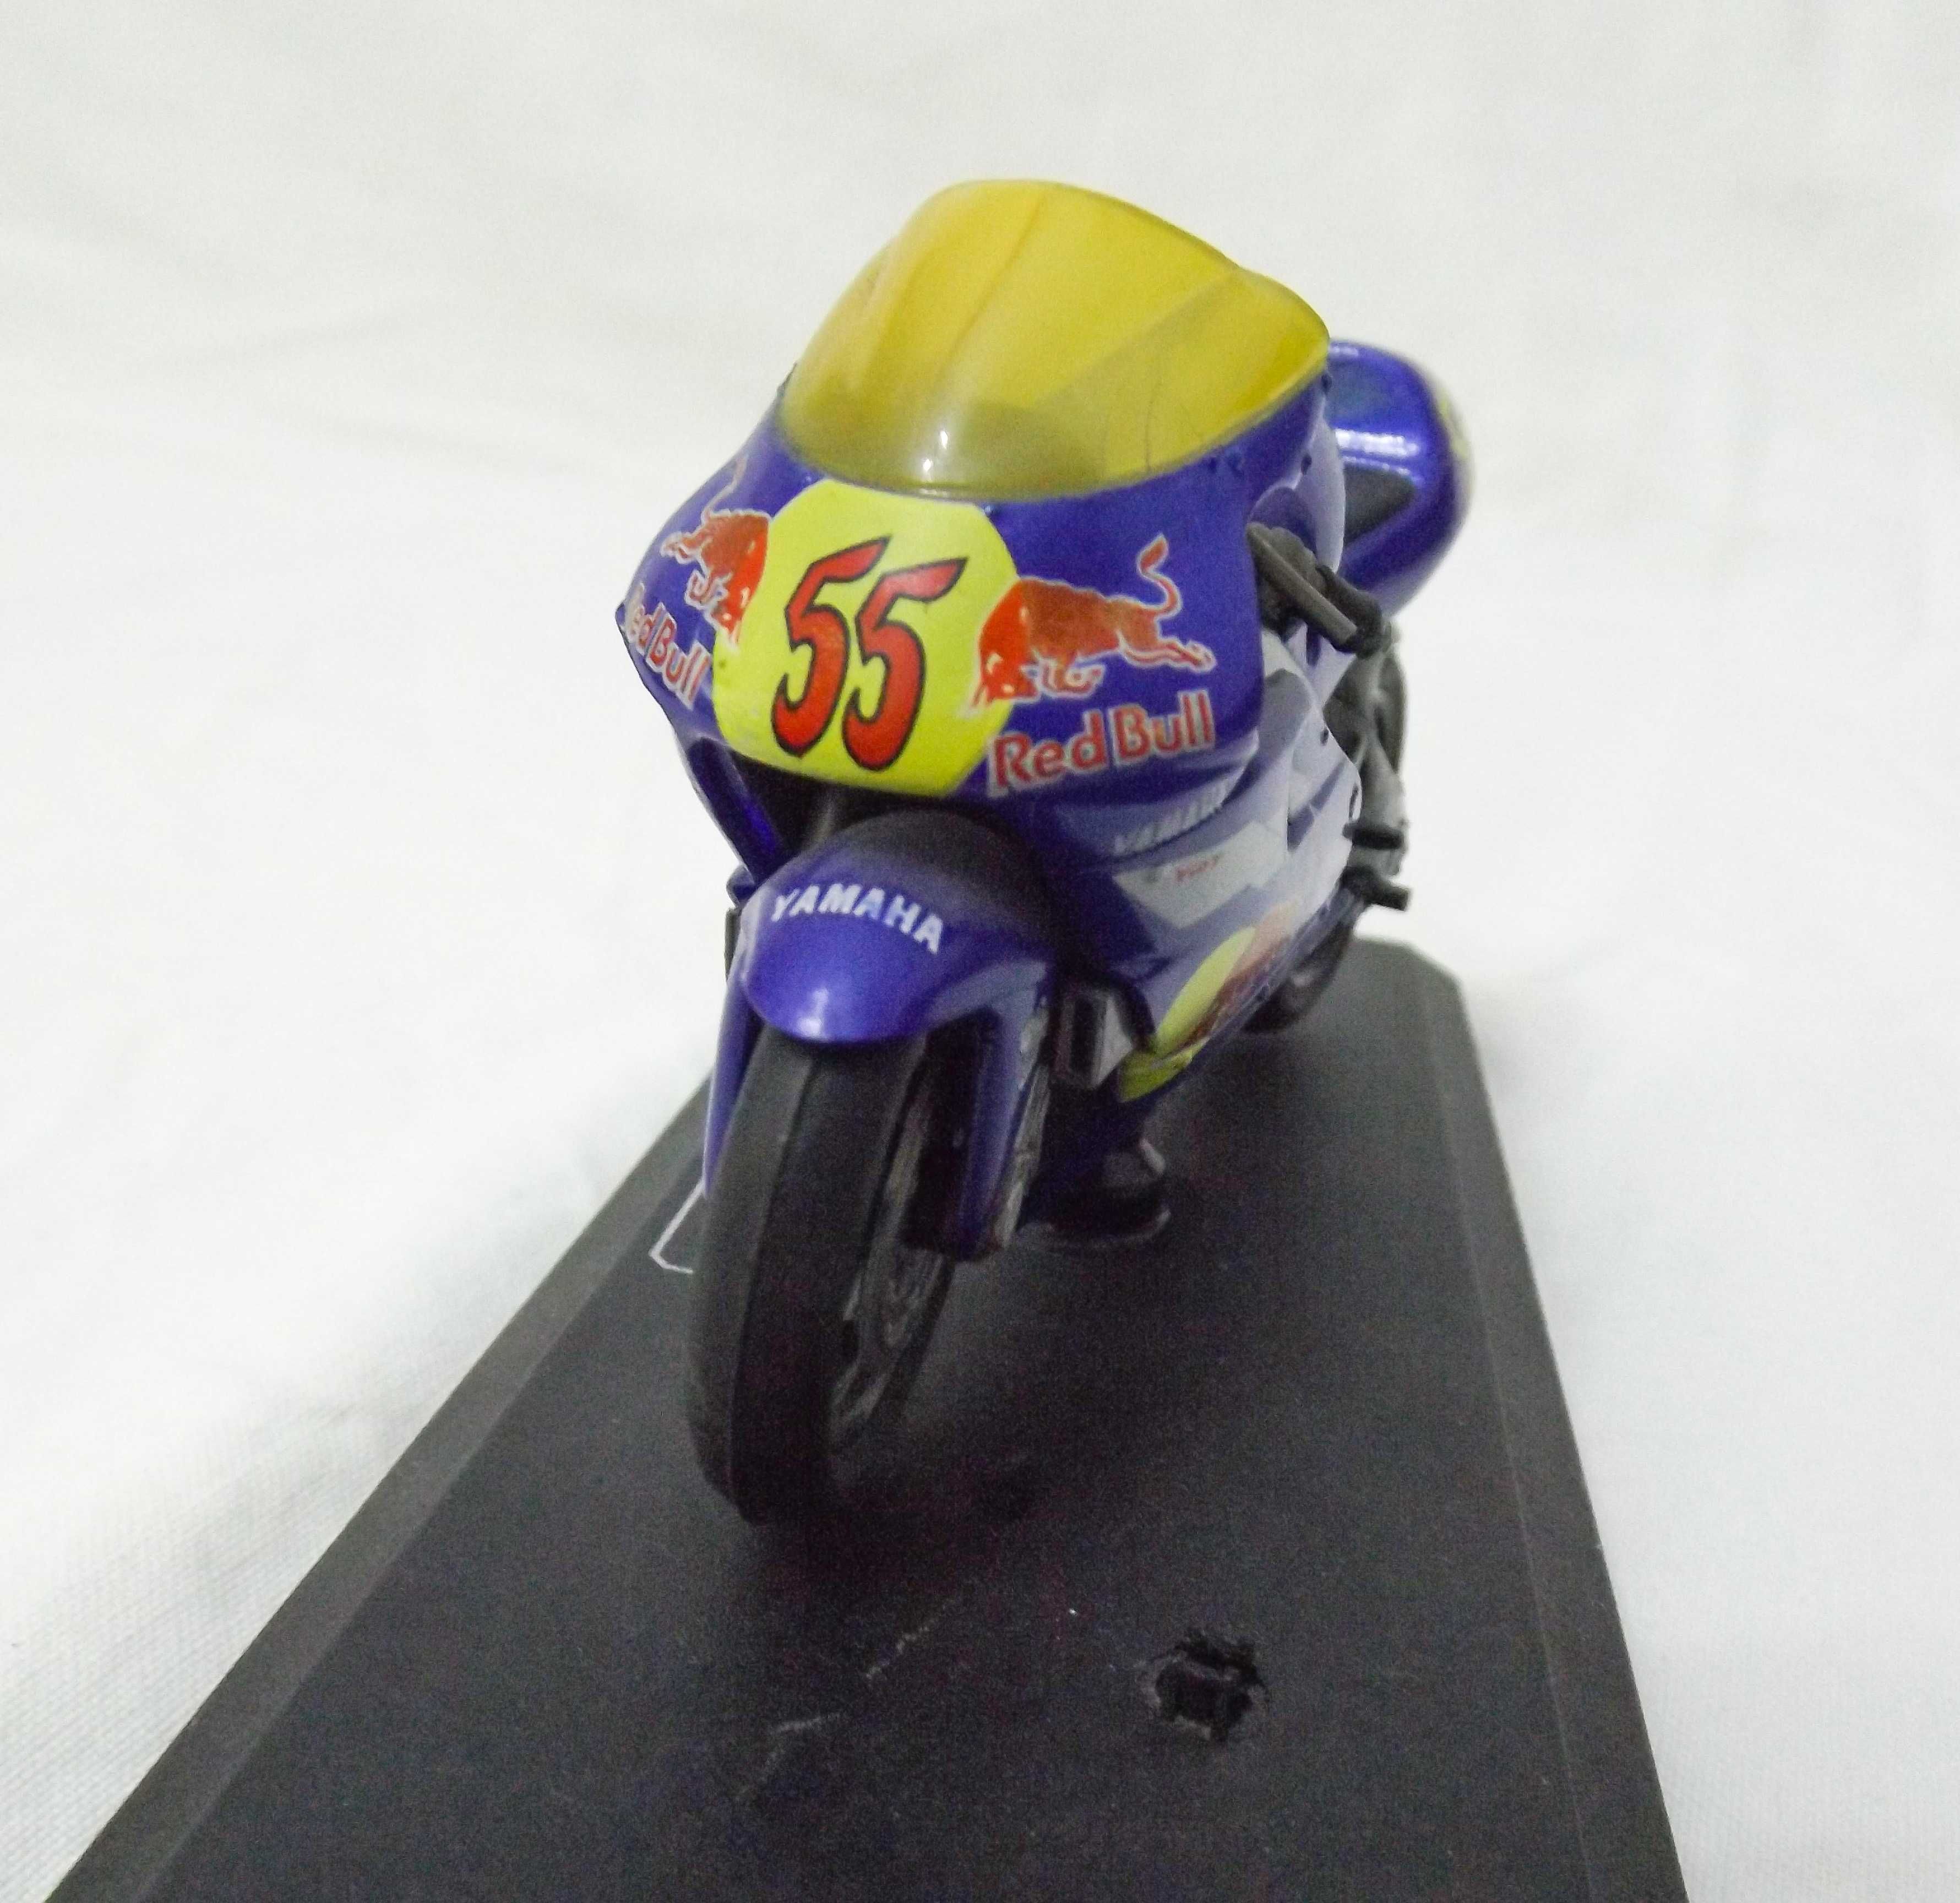 Macheta Yamaha YZR 500cc MotoGP 1/18 Laconi Regis